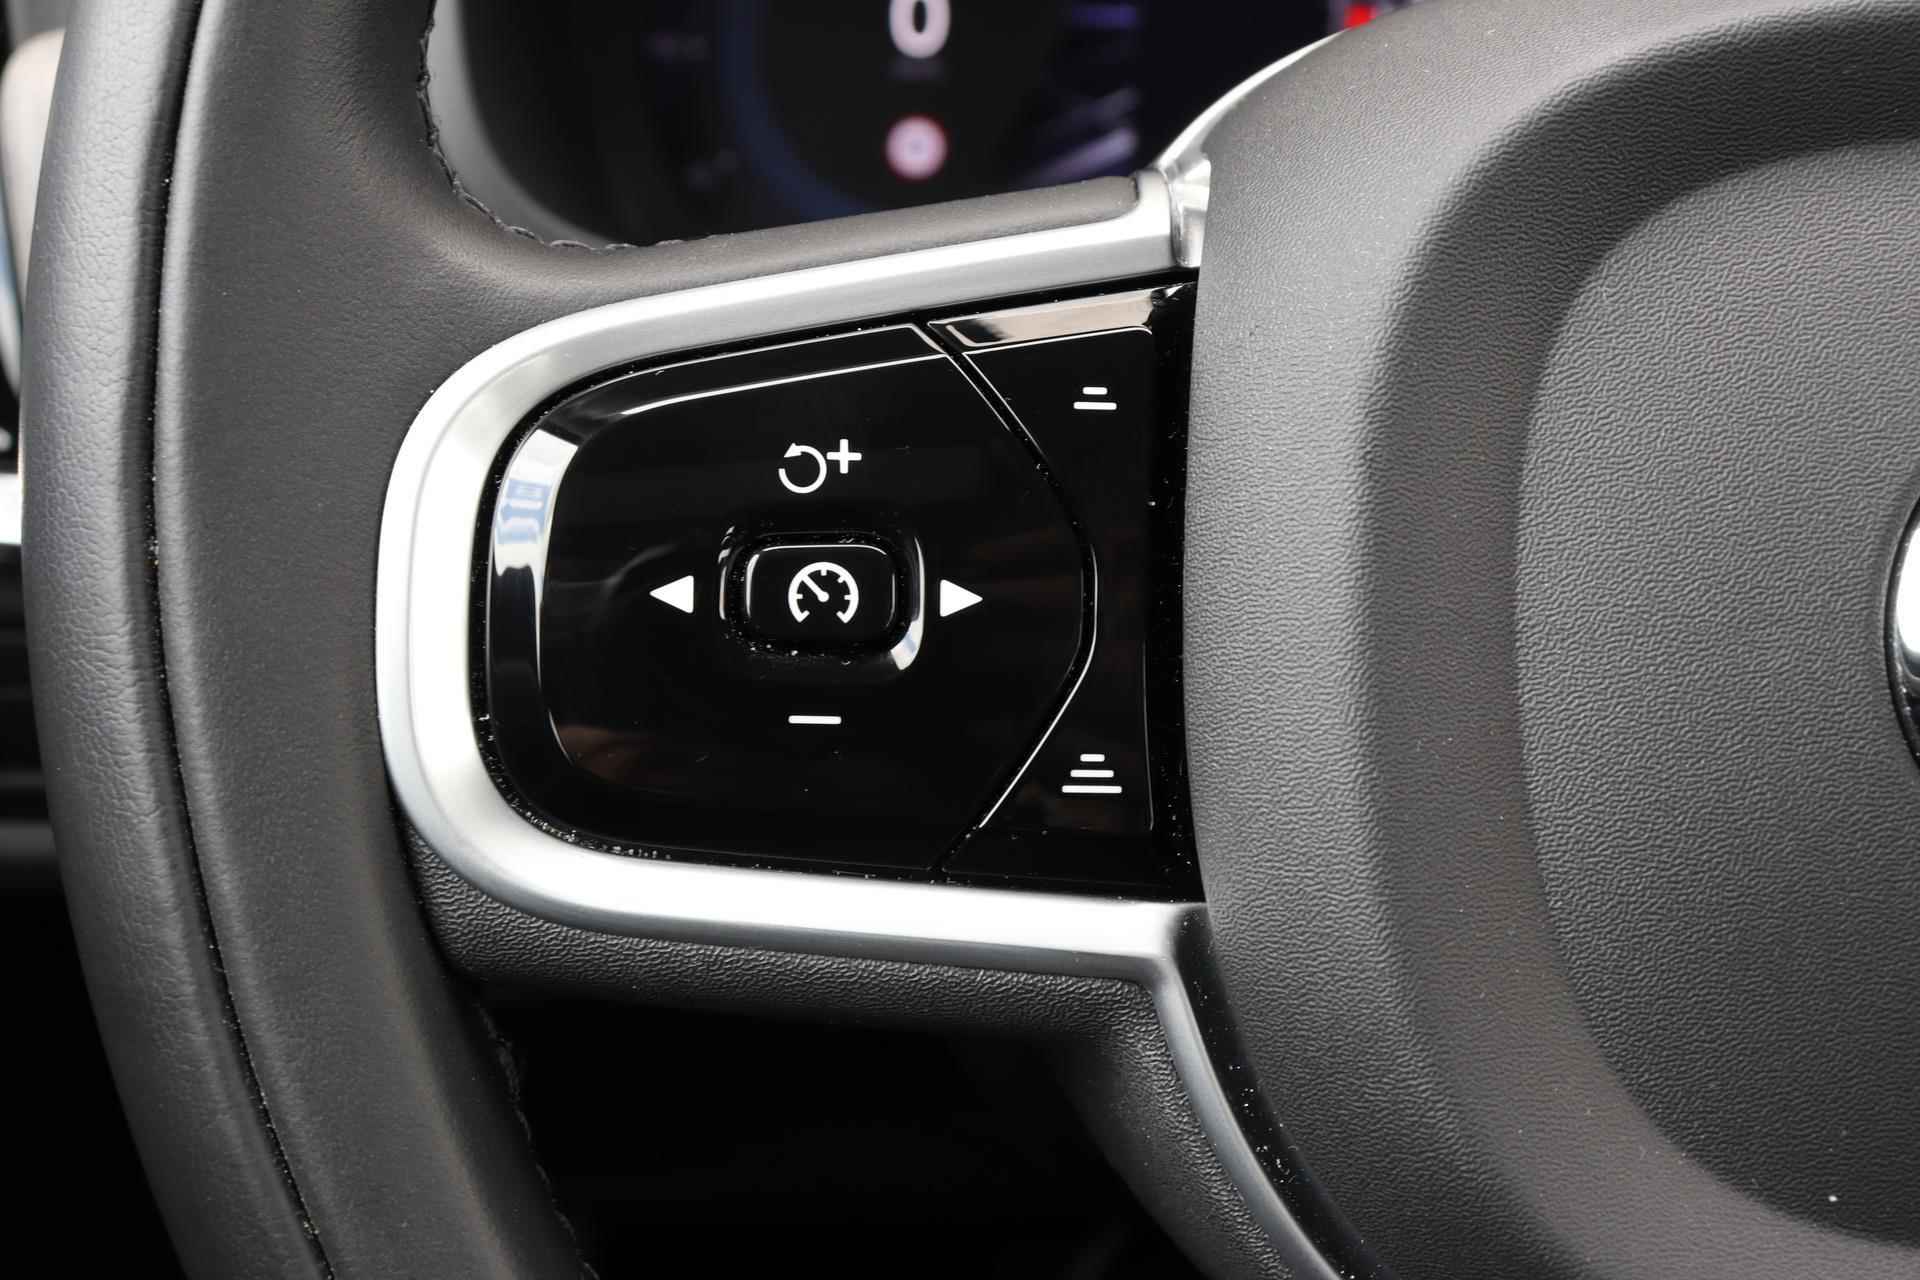 Volvo V90 T6 AWD Recharge Inscription - Panorama/schuifdak - IntelliSafe Assist & Surround - Harman/Kardon audio - Adaptieve LED koplampen - Parkeercamera achter - Verwarmde voorstoelen & stuur - Parkeersensoren voor & achter - Elektr. bedienb. voorstoelen met geheugen - Standkachel - 19' LMV - 18/33